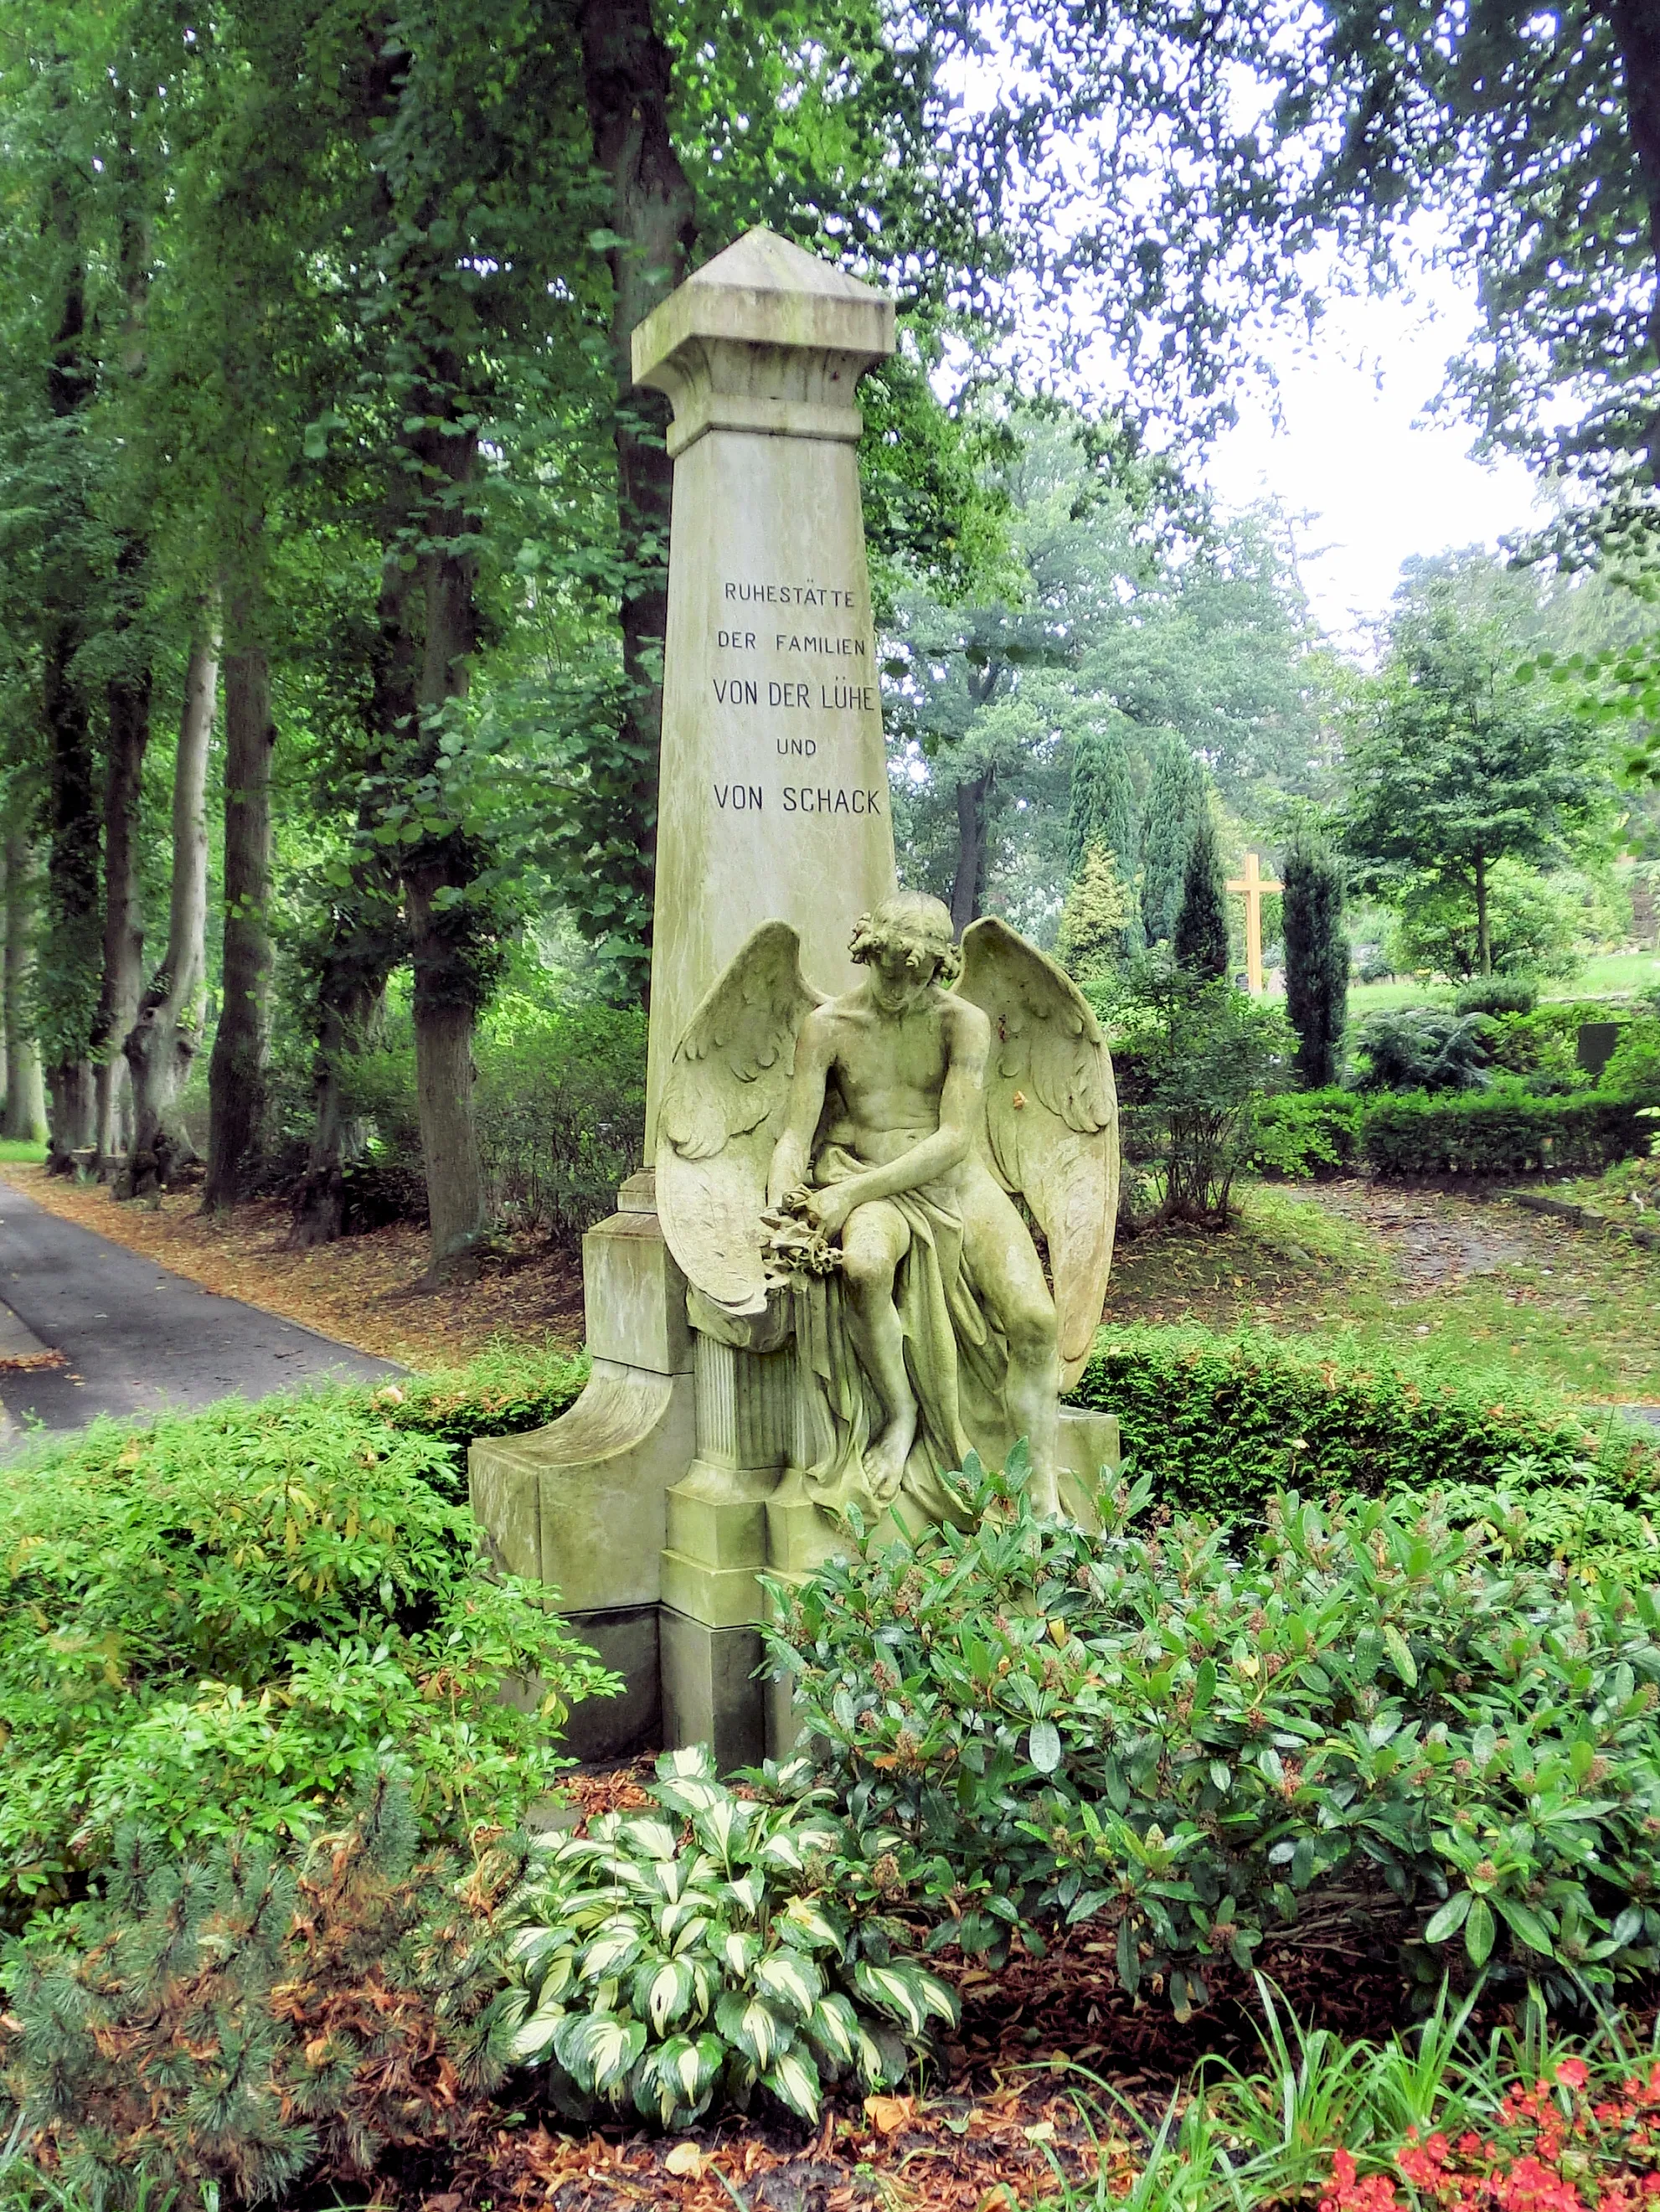 Photo showing: Bad Doberan, Friedhof, Grab von Lühe und von Schack, Baudenkmal